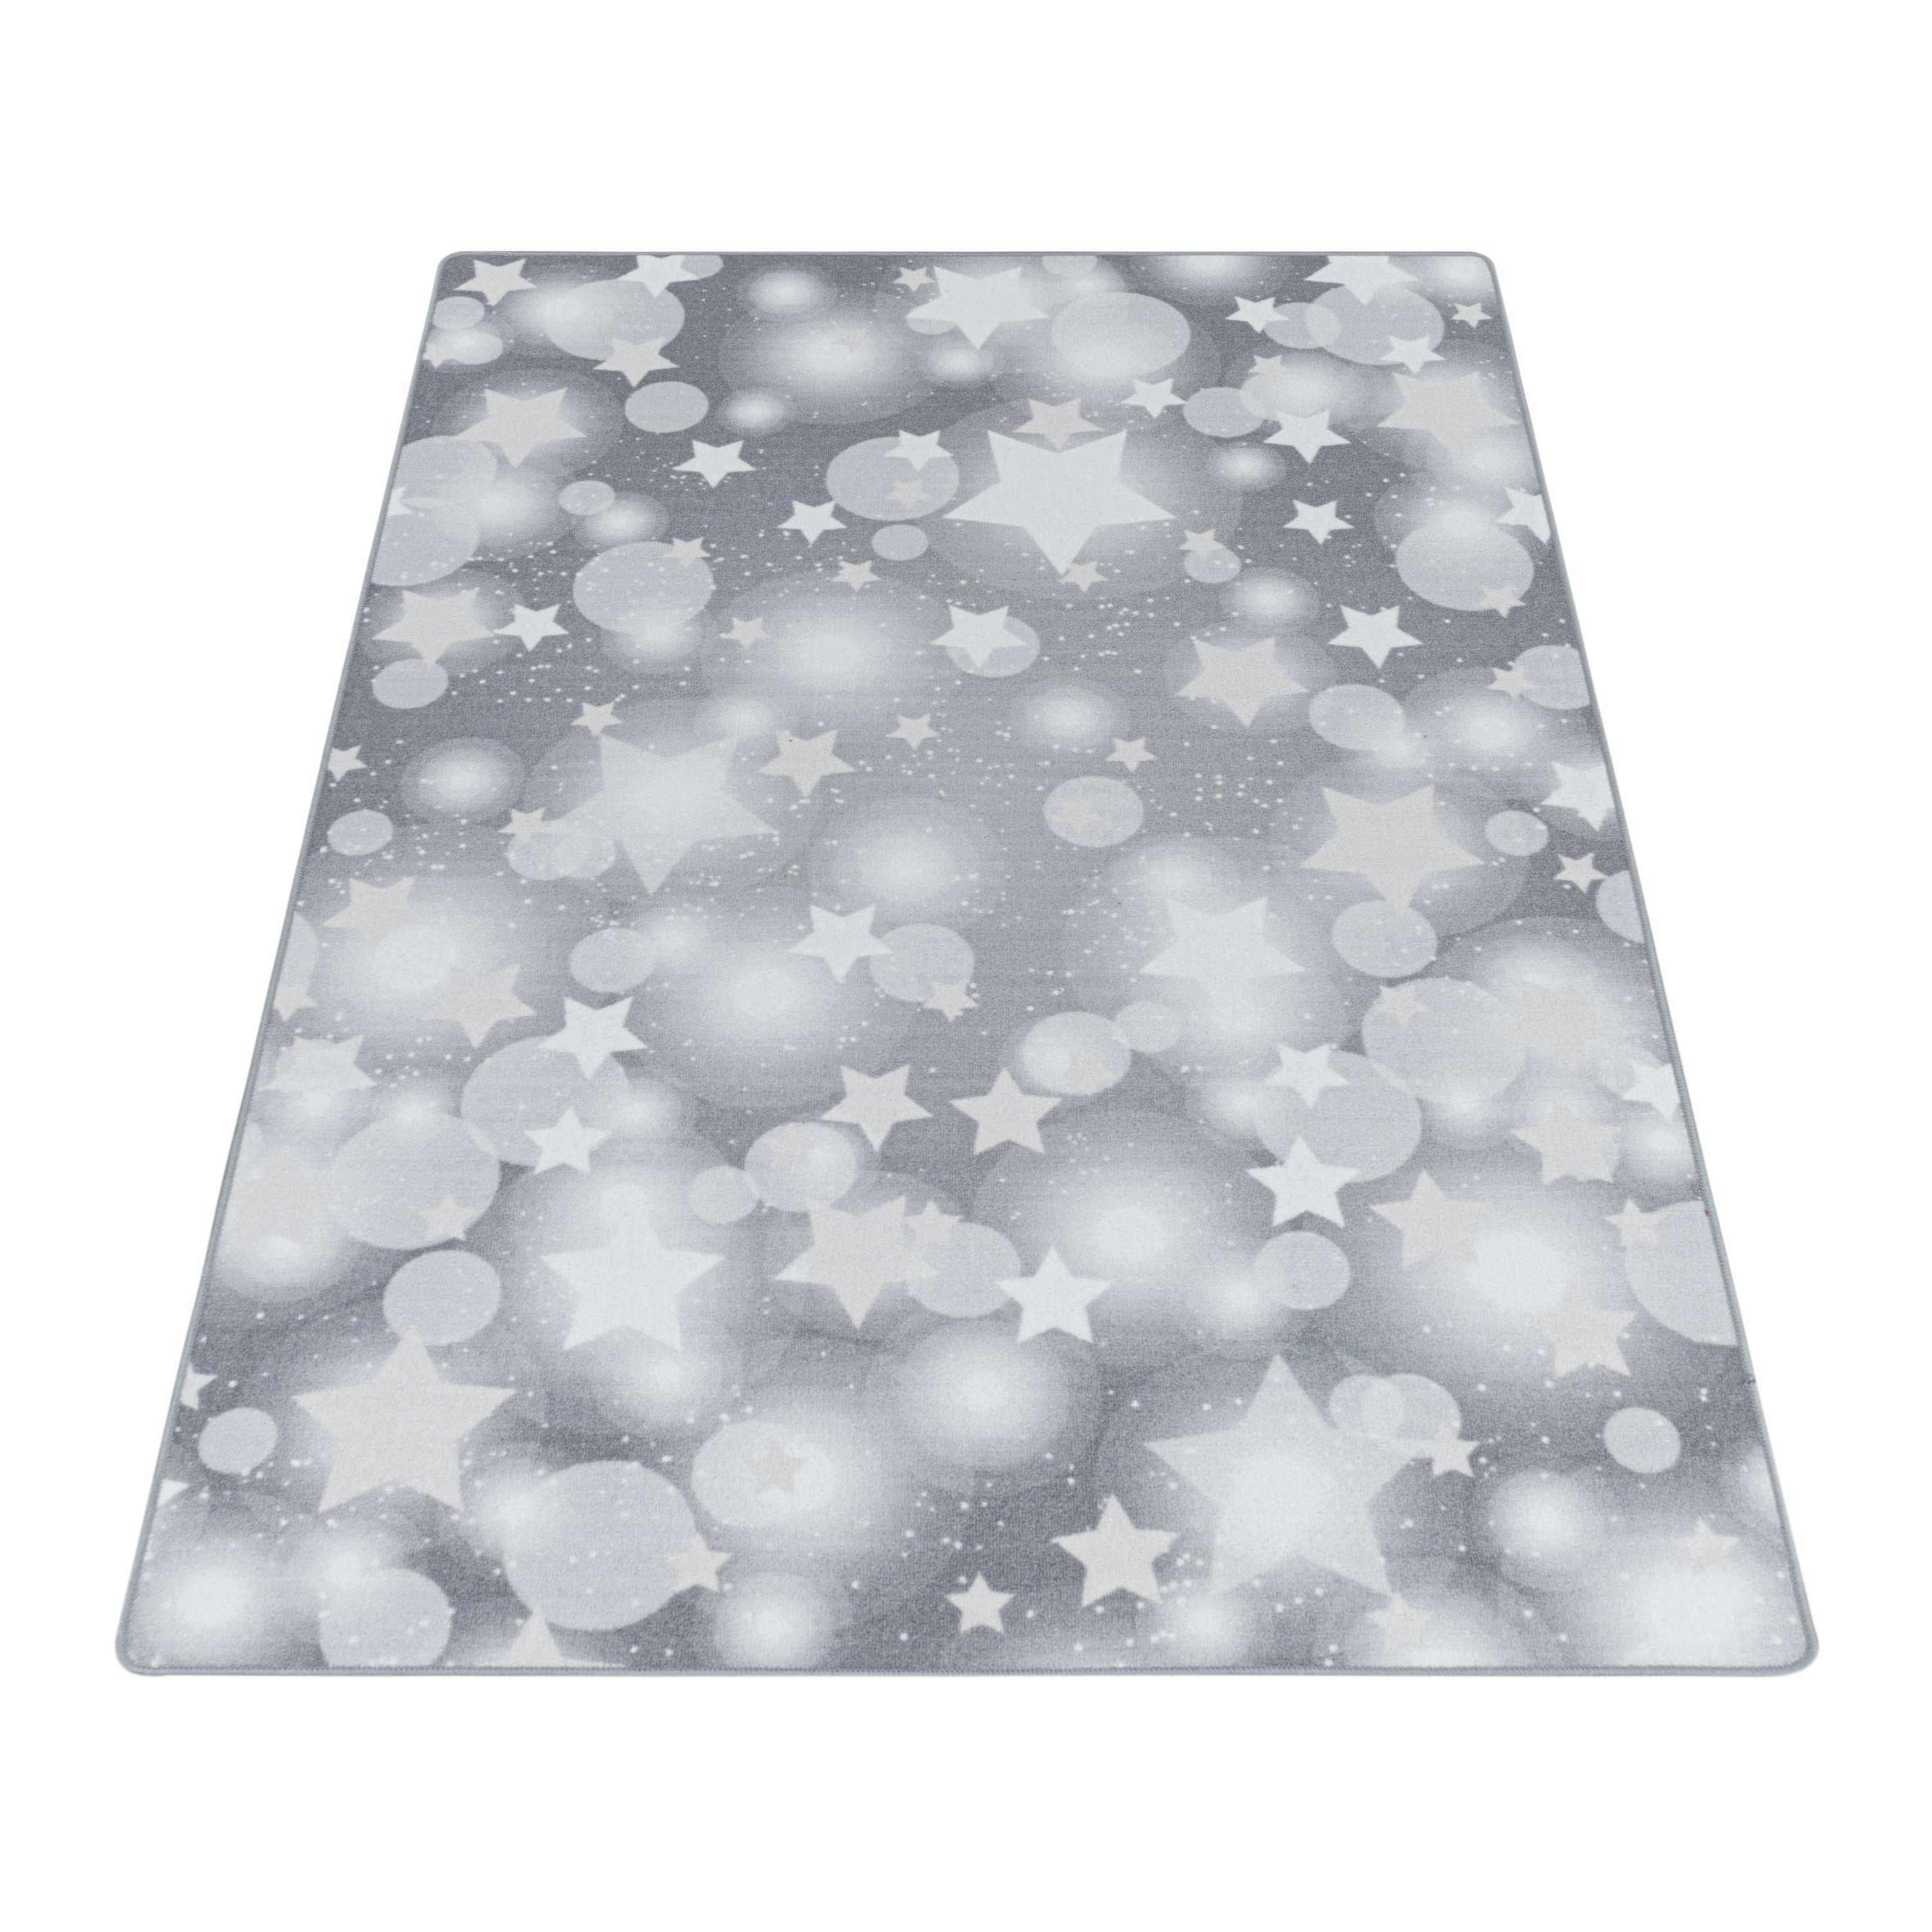 Kurzflor Kinderteppich Kinderzimmer Teppich Spielteppich Sterne Punkte Grau